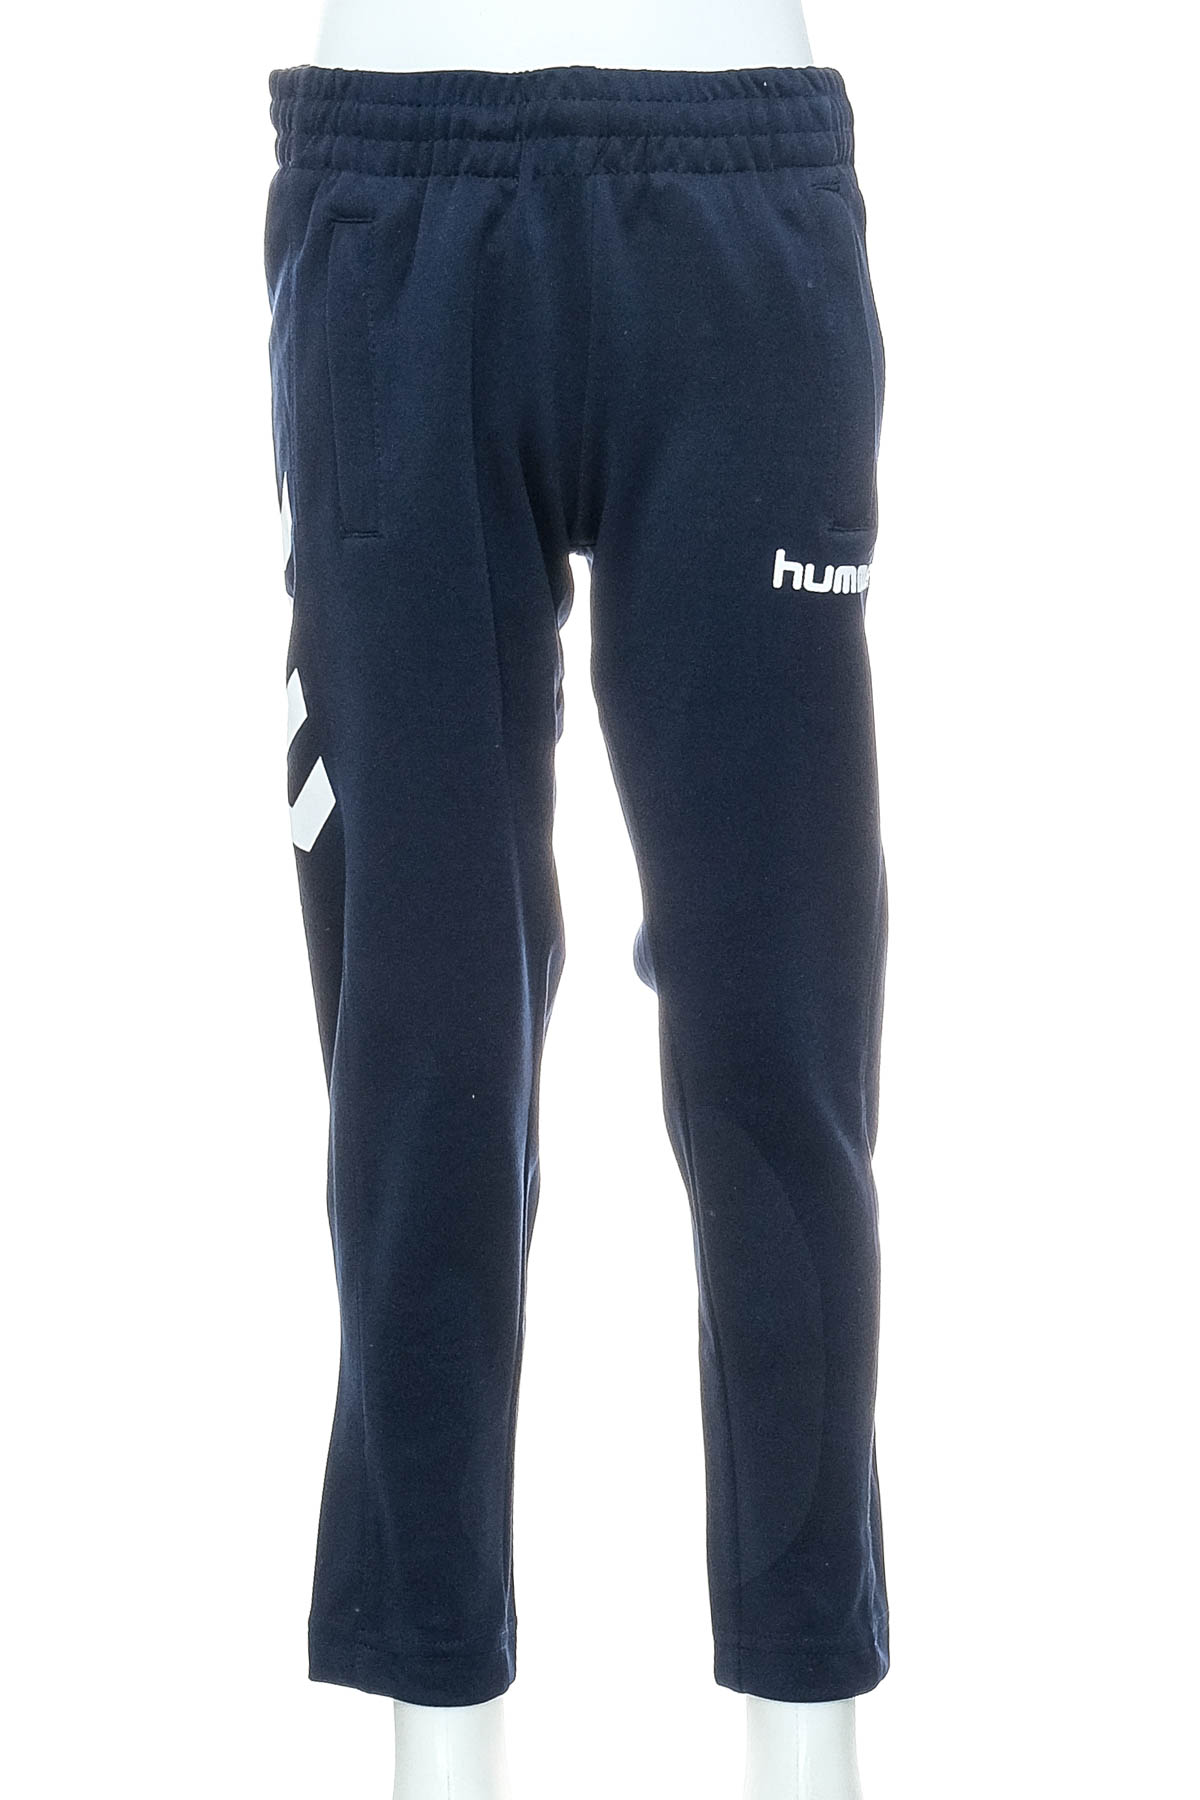 Pantaloni de sport pentru băiat - Hummel - 0